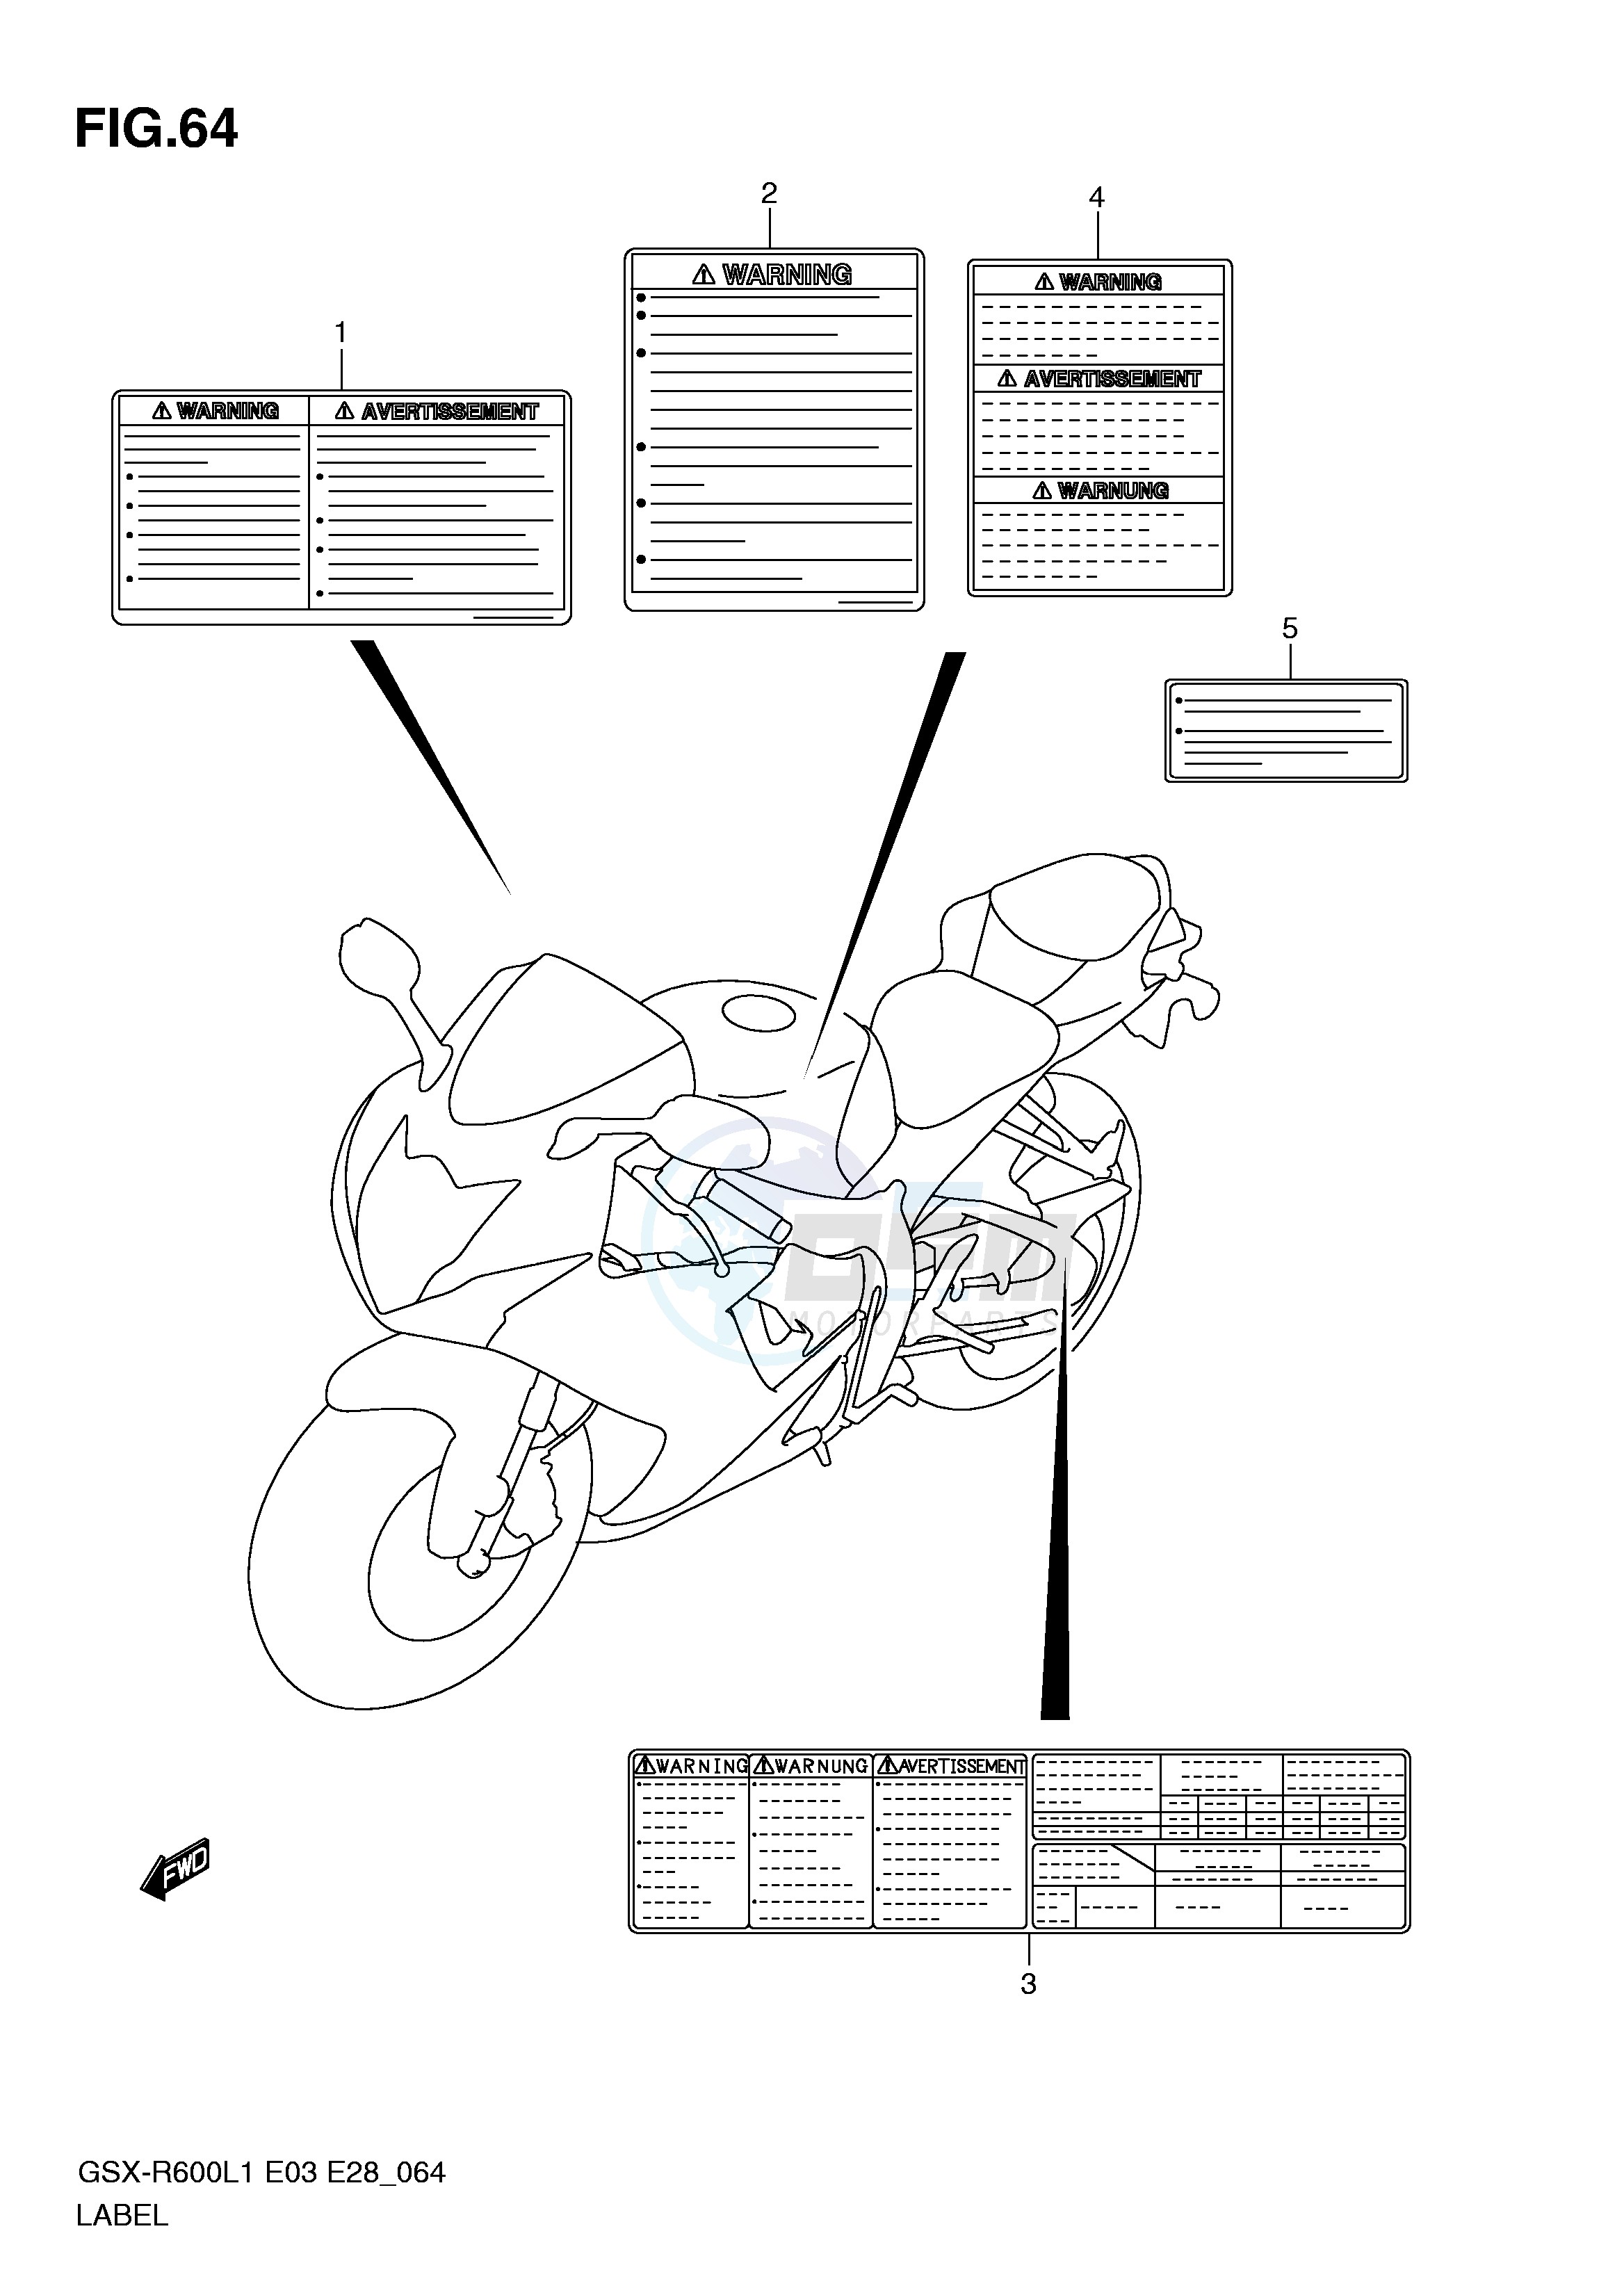 LABEL (GSX-R600L1 E28) blueprint